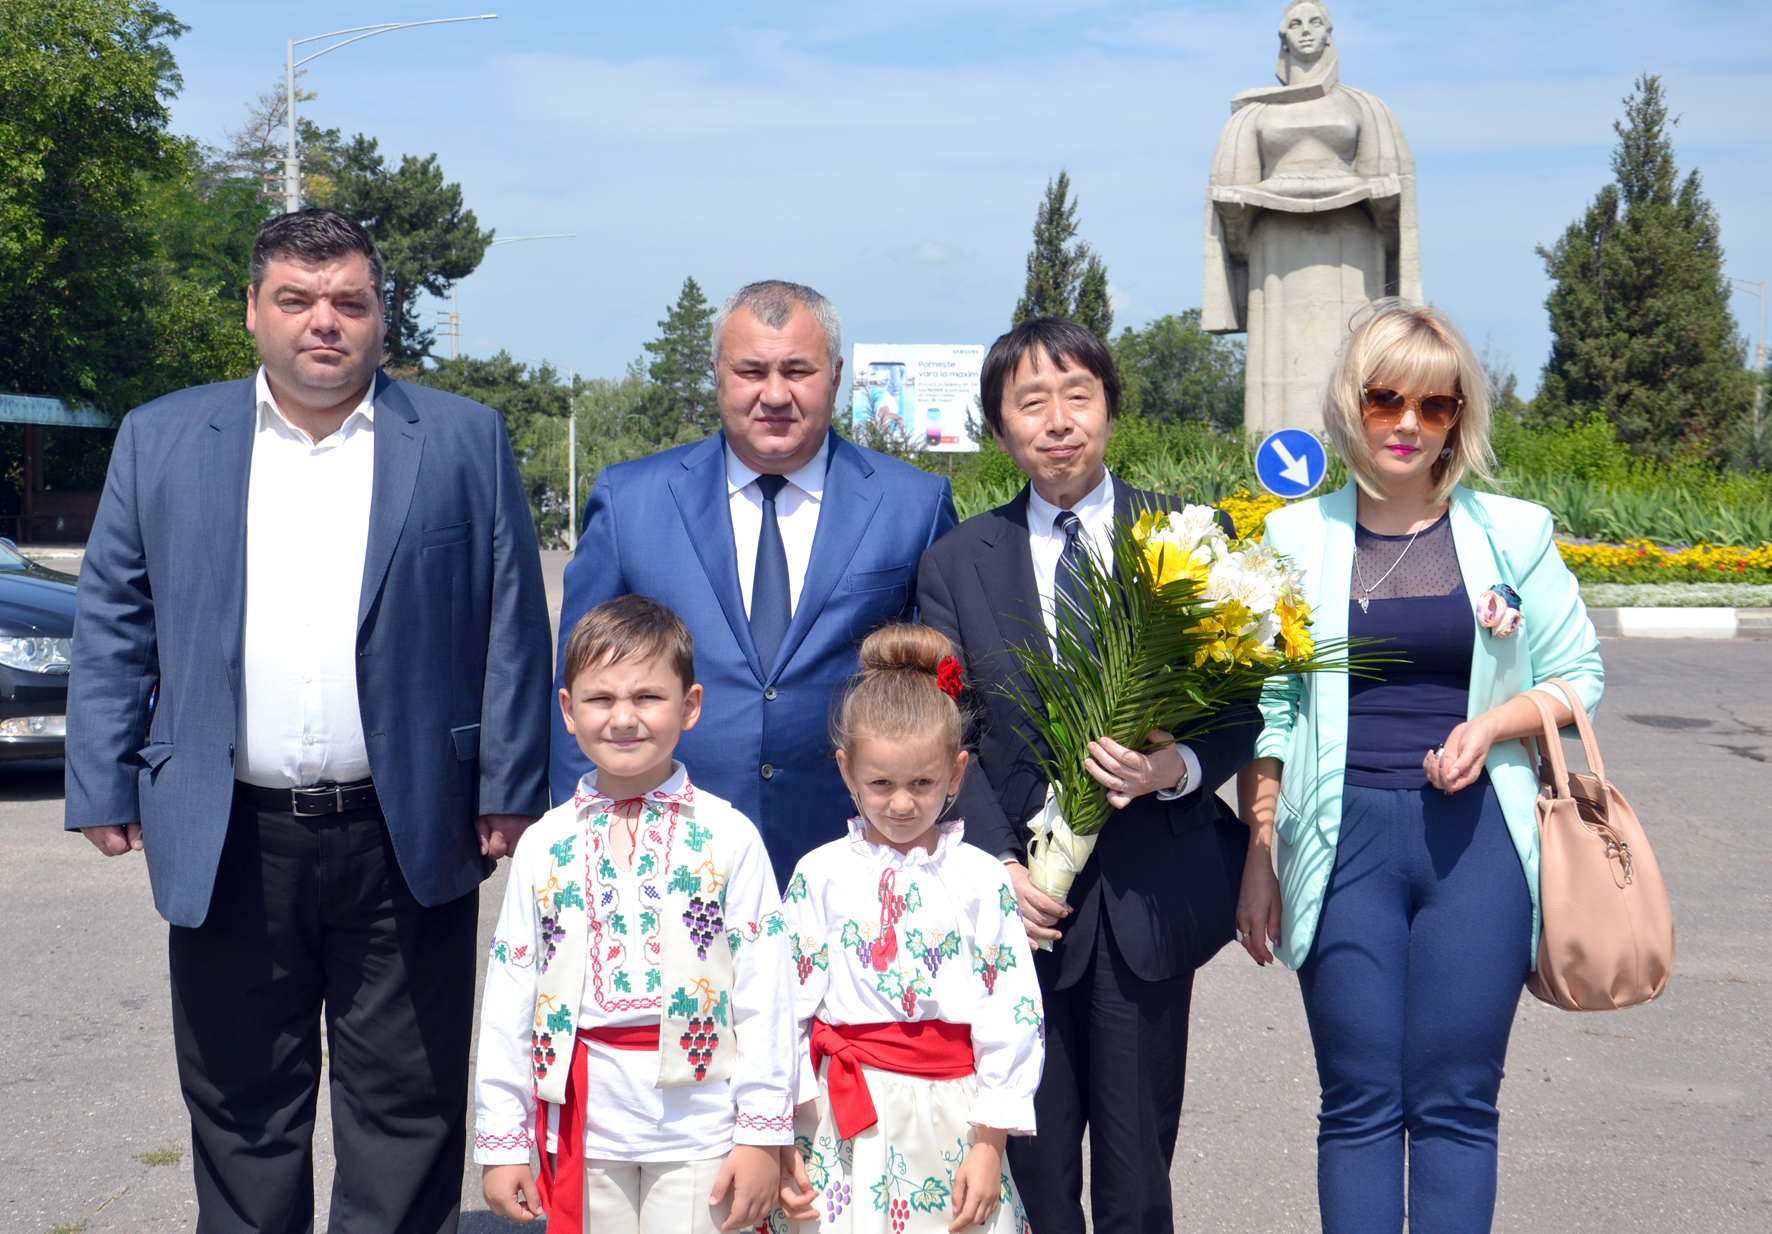 Rușine la Bălți! Primarul Nicolai Grigorișin a avut nevoie de traduceri la discursul ambasadorului Japoniei când acesta a vorbit în română